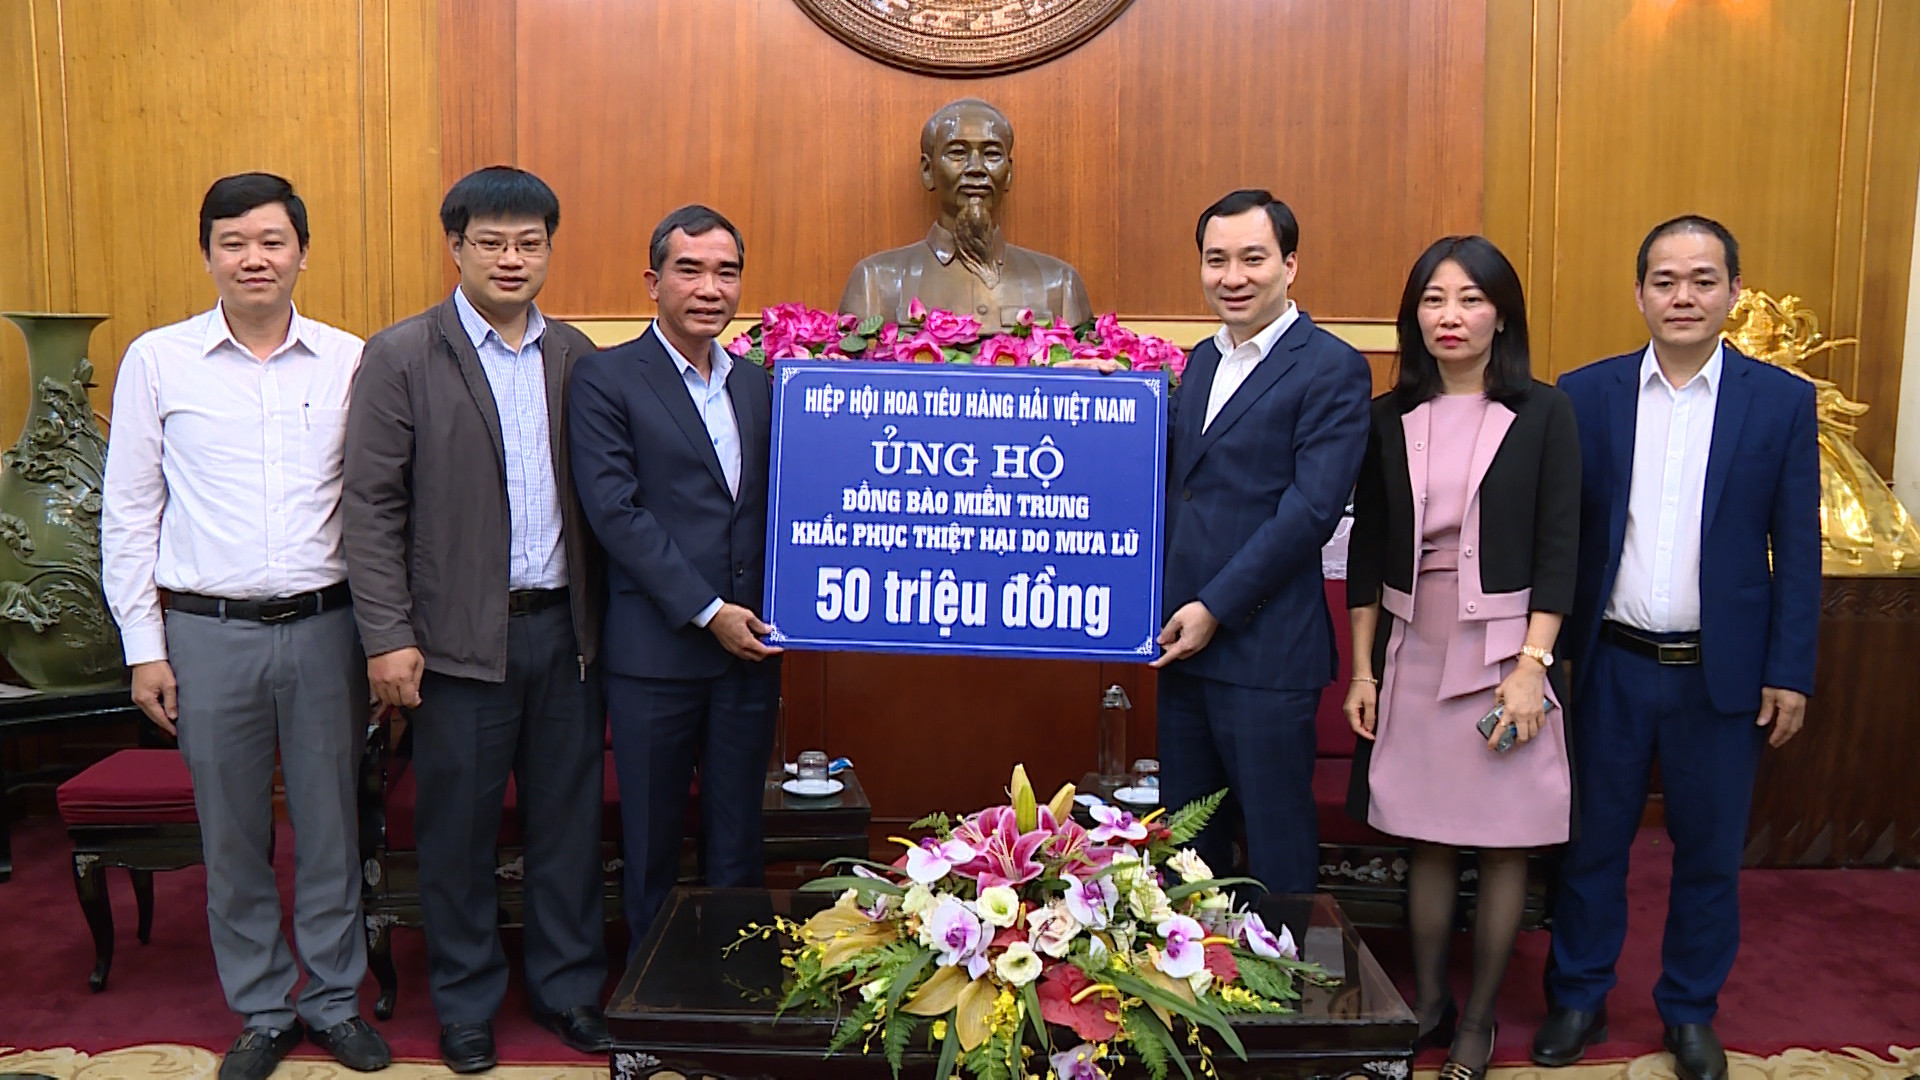 Ông Vũ Văn Tiến, Trưởng ban Tuyên giáo UBTƯ MTTQ Việt Nam tiếp nhận ủng hộ.